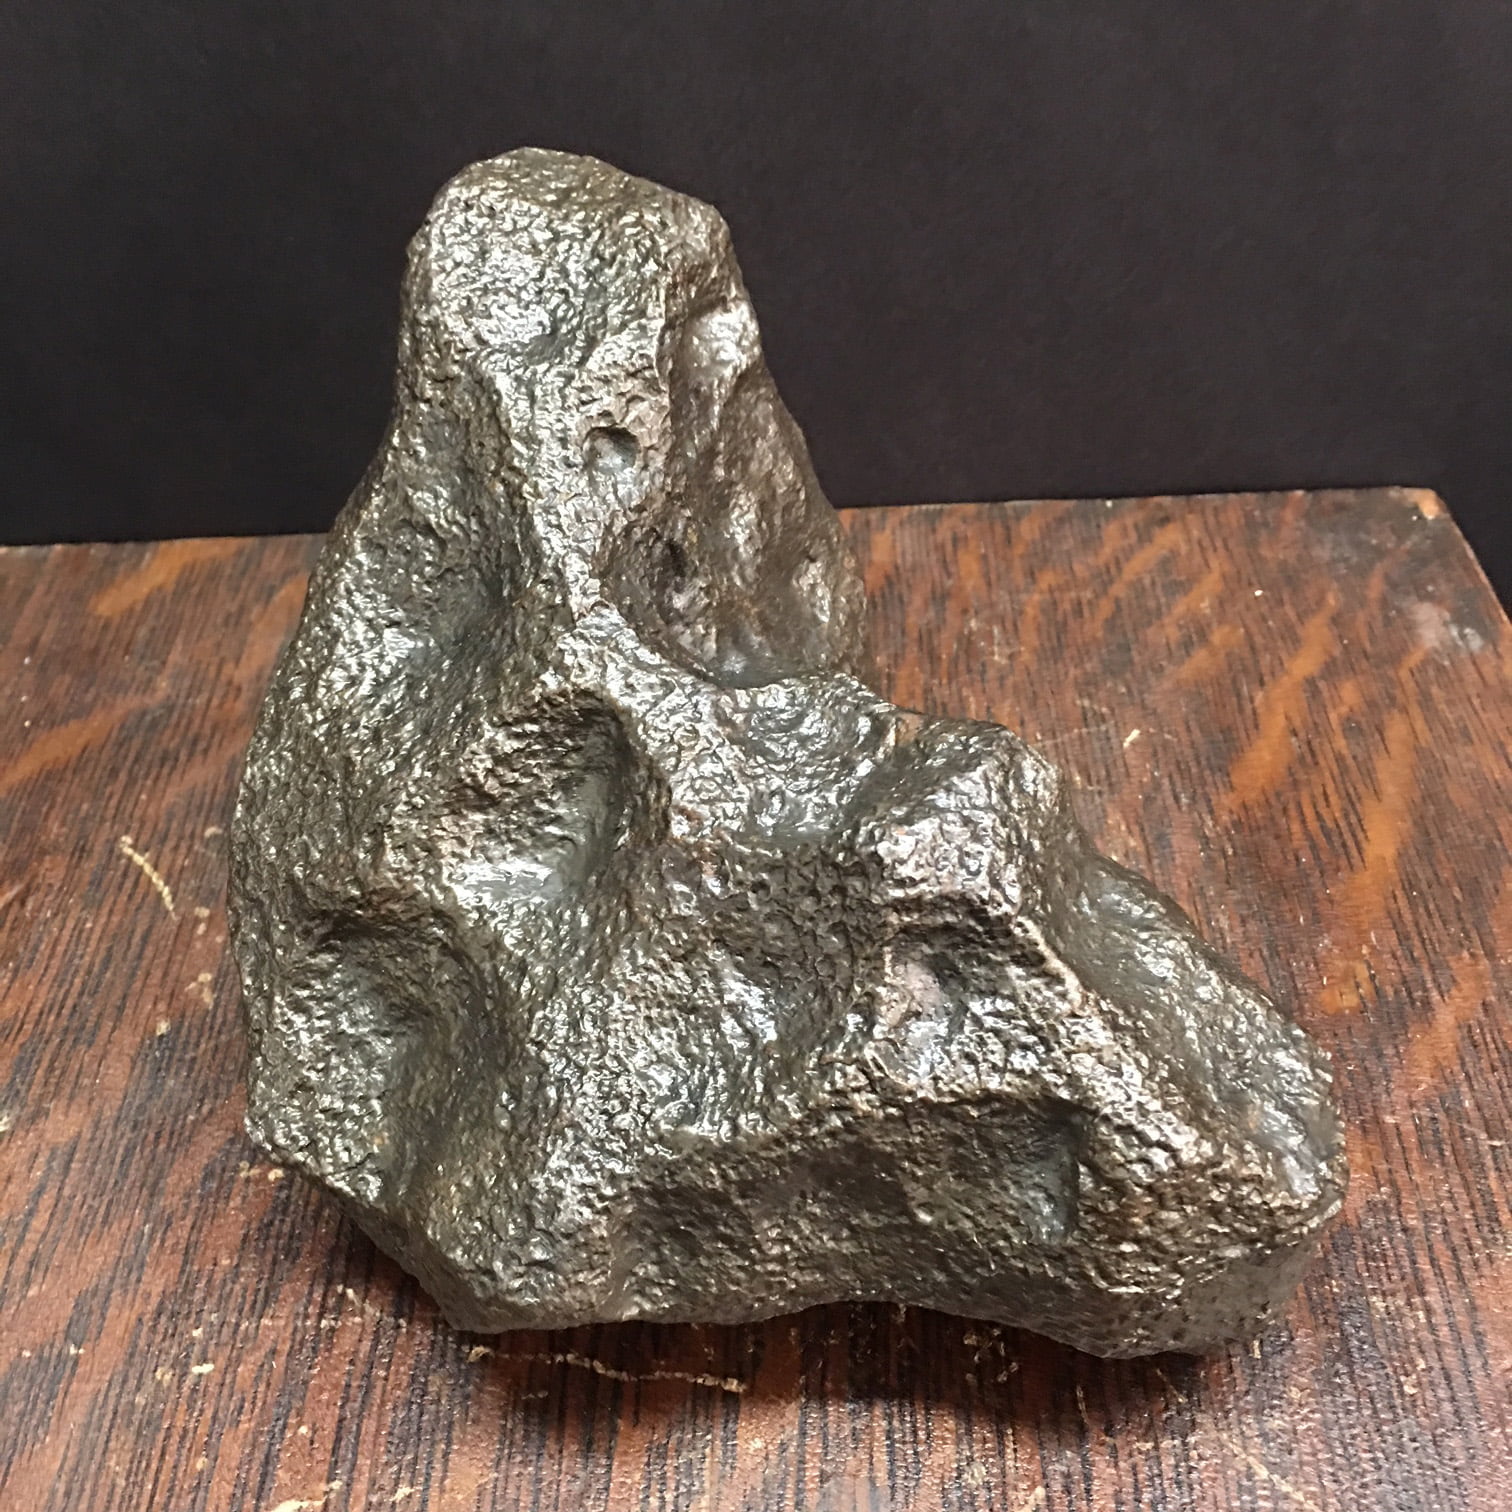 Huge Campo Del Cielo Iron Meteorite 7.9 kg or 17.5 lbs